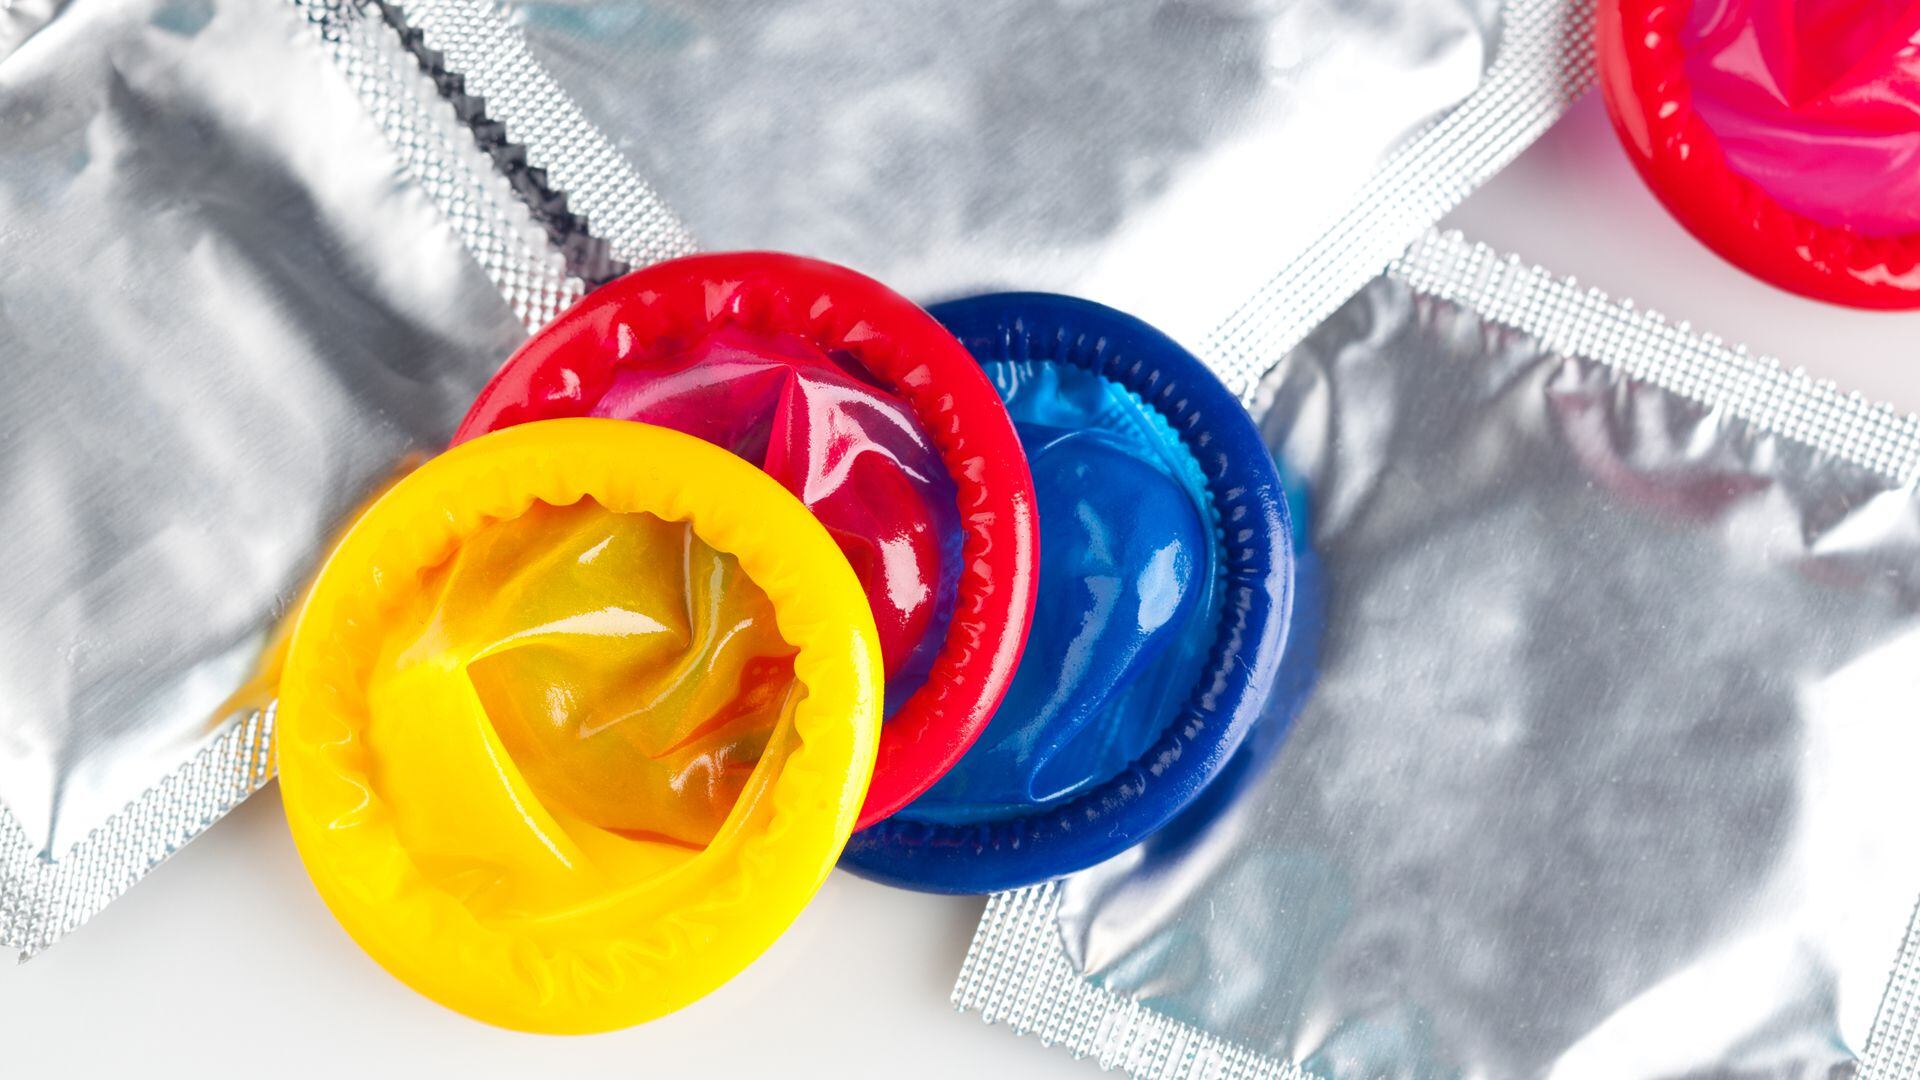 Usar preservativo reduce el riesgo de Mpox, aunque la protección no es total. Igualmente se recomienda su uso para prevenir otras infecciones (iStock)